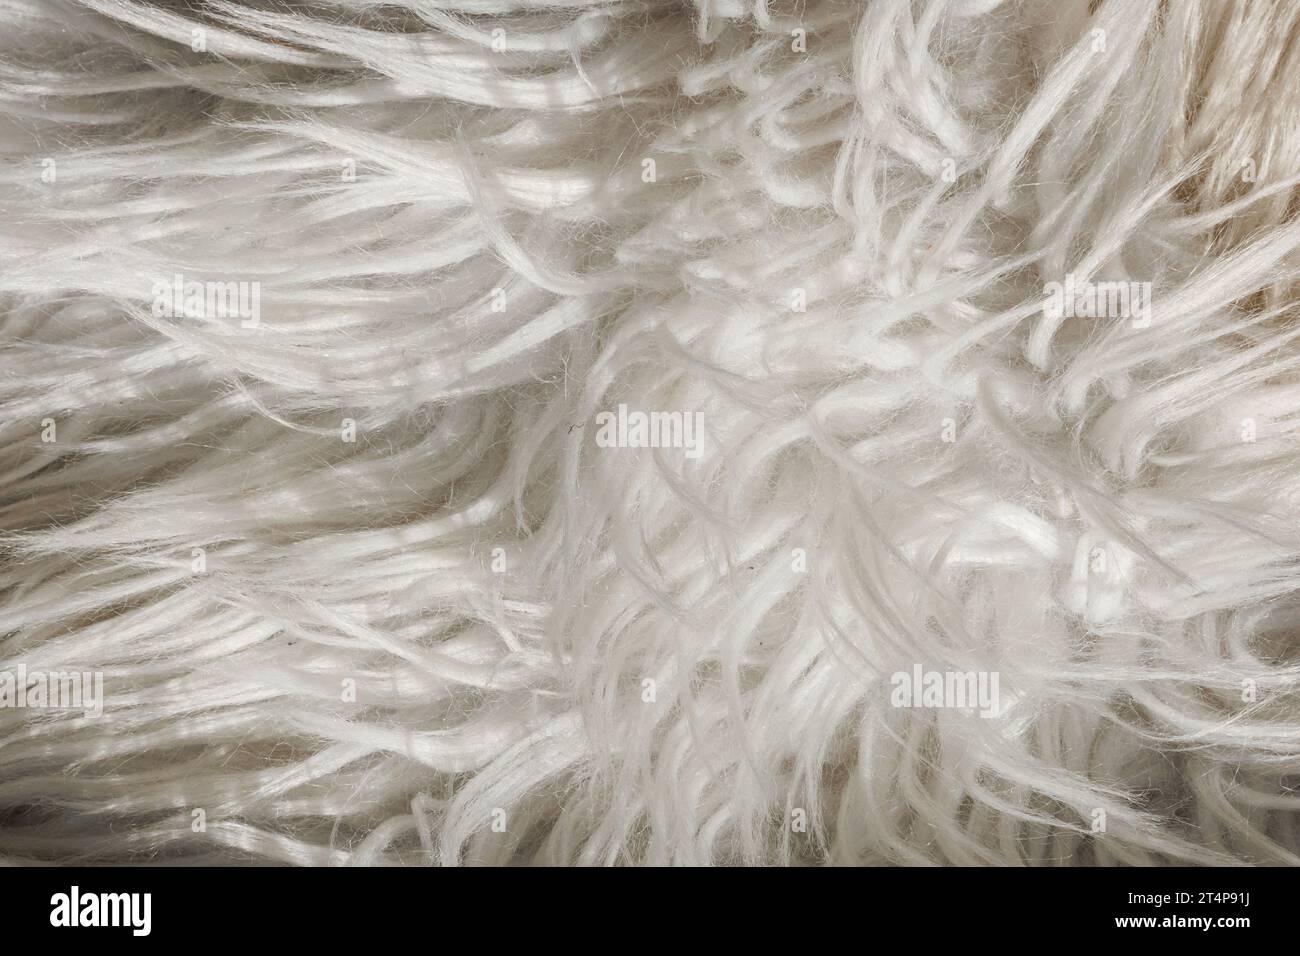 Tela de piel sintética, piel sintética peluda, lana de oveja de pelo largo.  Pelo largo de